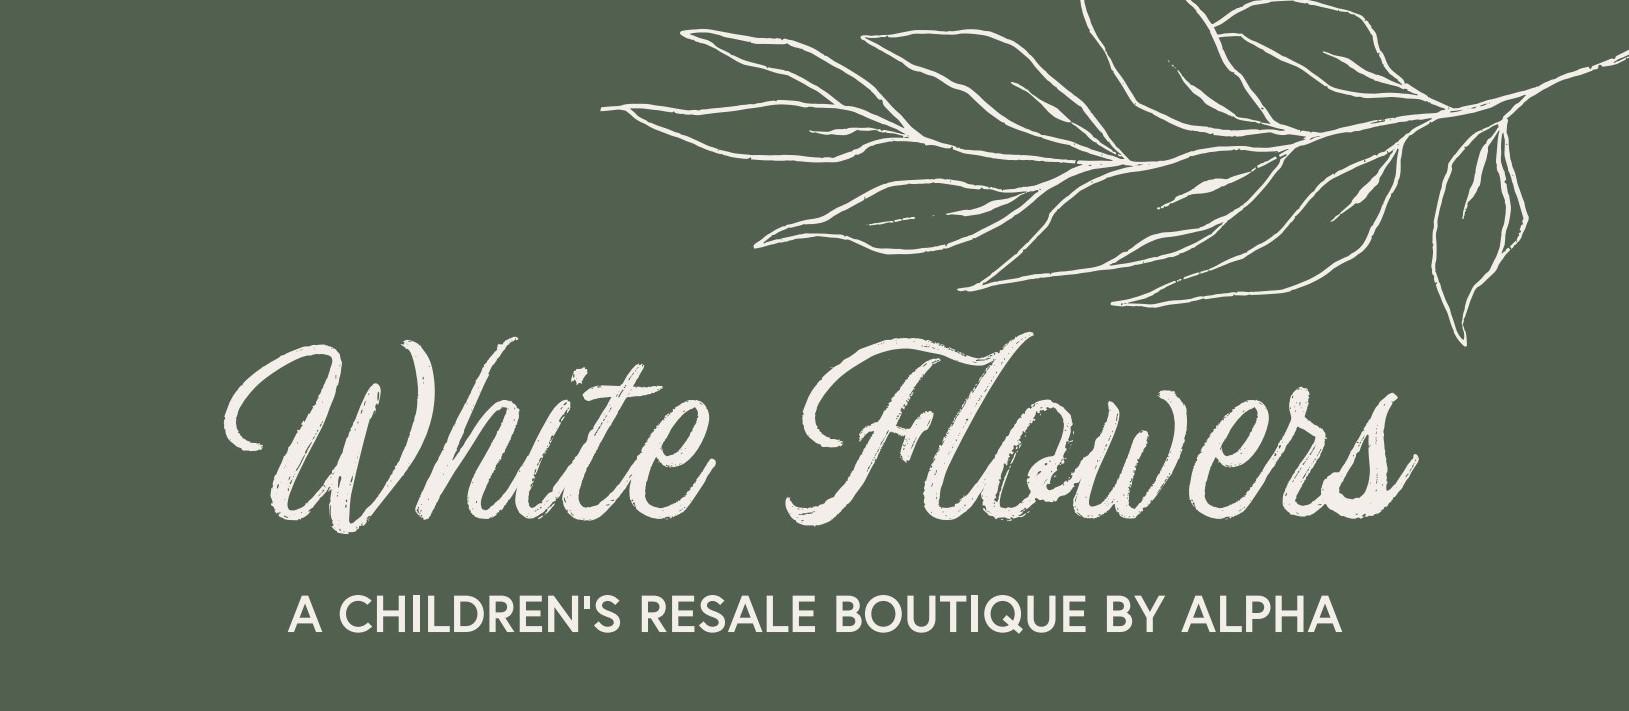 White Flowers Children's Resale Boutique